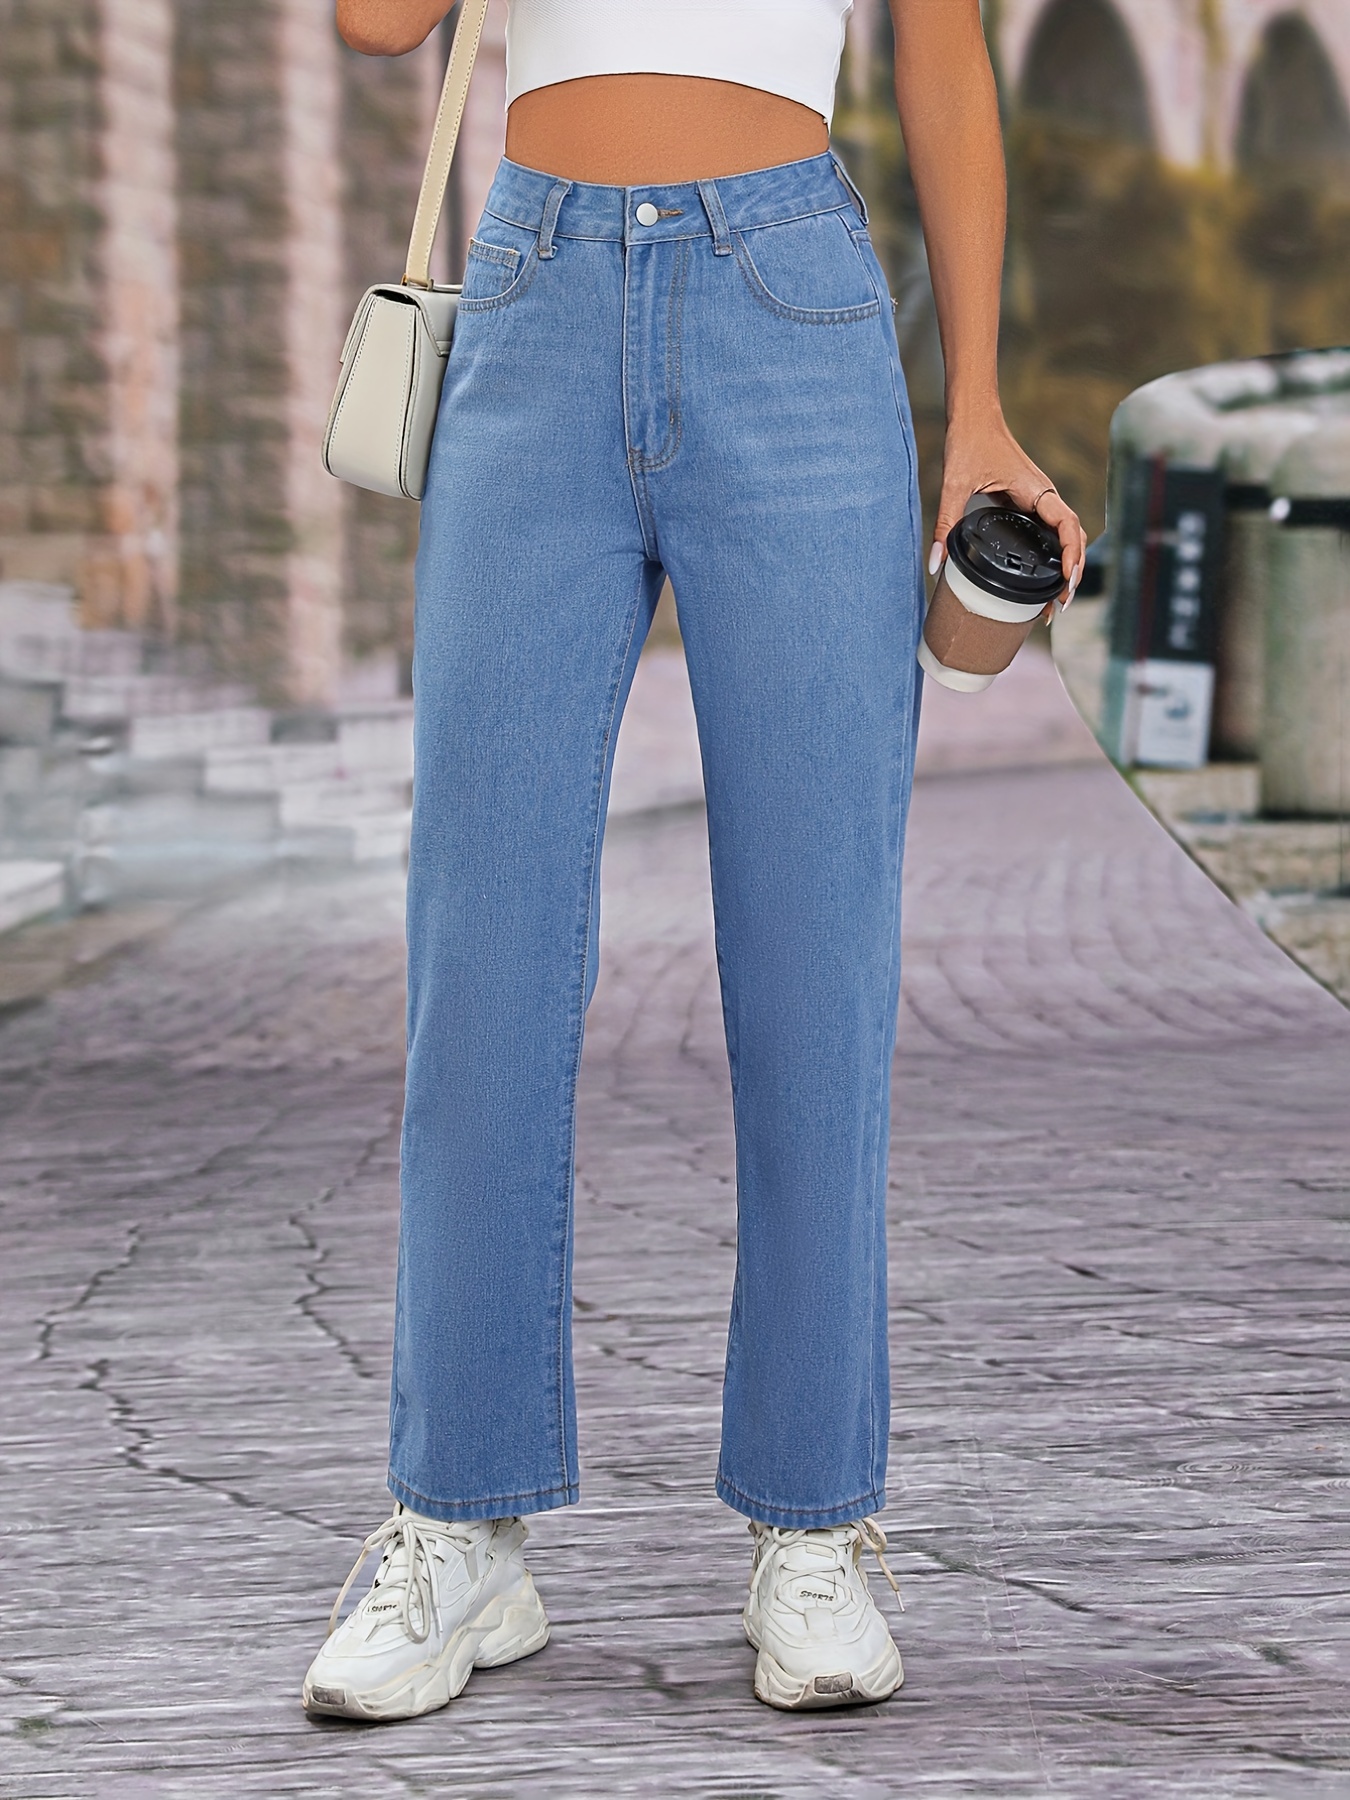 Loose Fit Versatile Straight Jeans, Slash Pockets Non-Stretch Fashion Denim  Pants, Women's Denim Jeans & Clothing